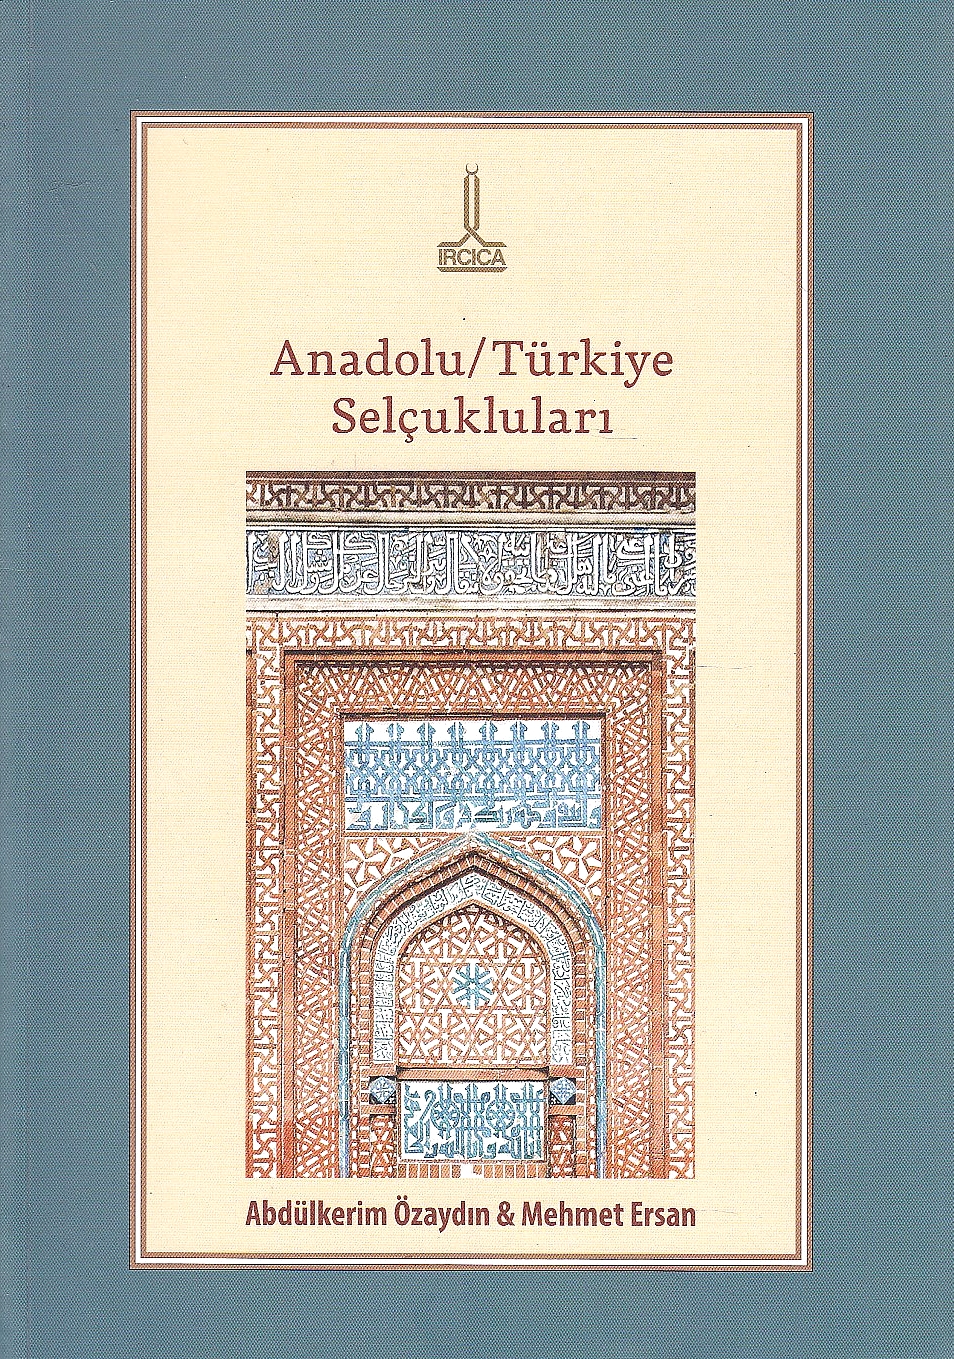 Anadolu/Türkiye selçukluları